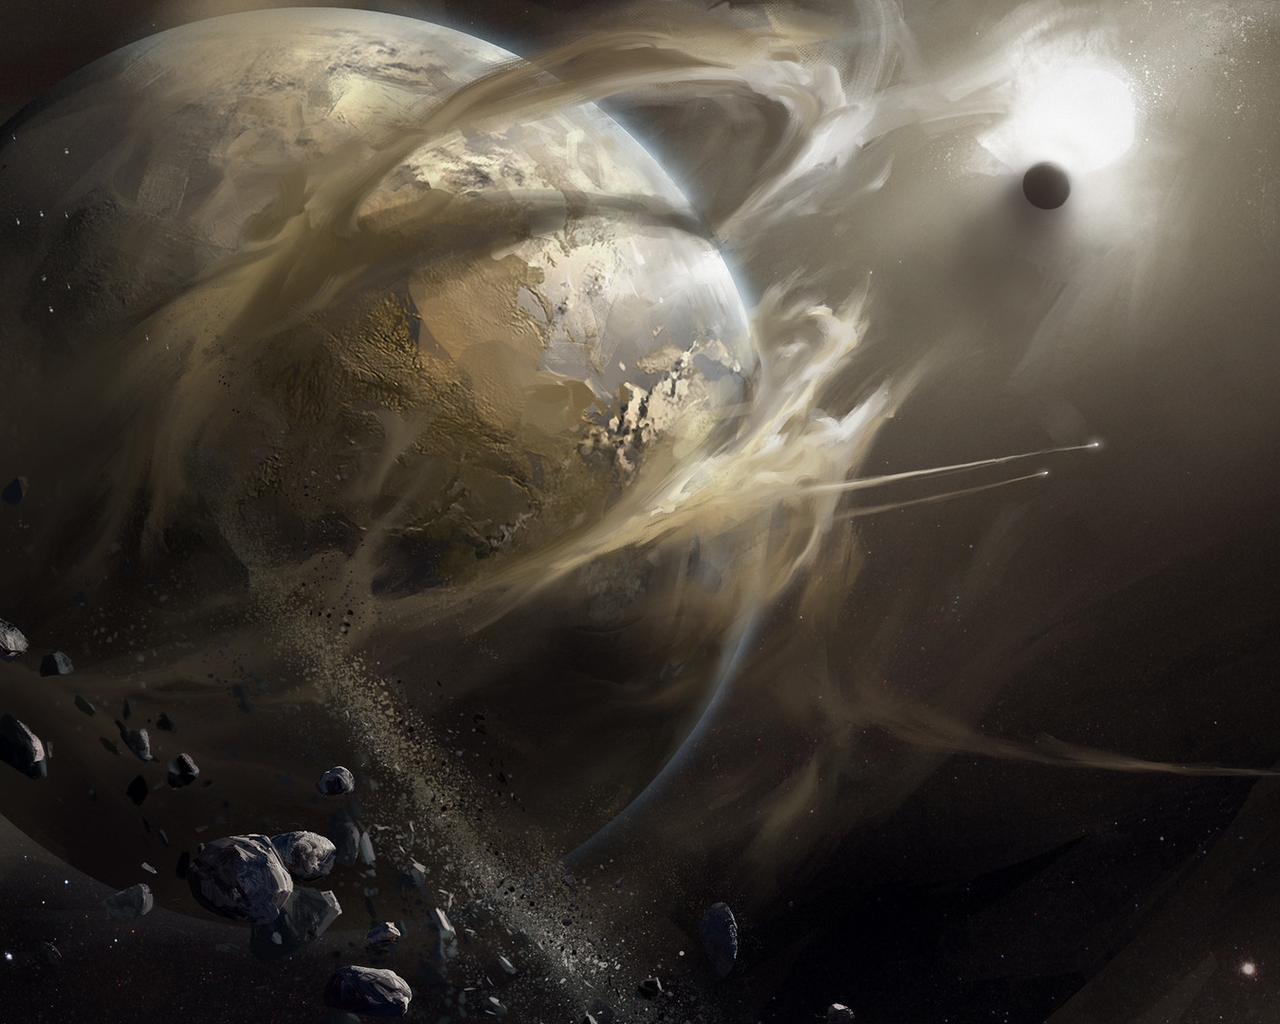 Картинка: Планеты, космос, пыль, звезда, камни, арт